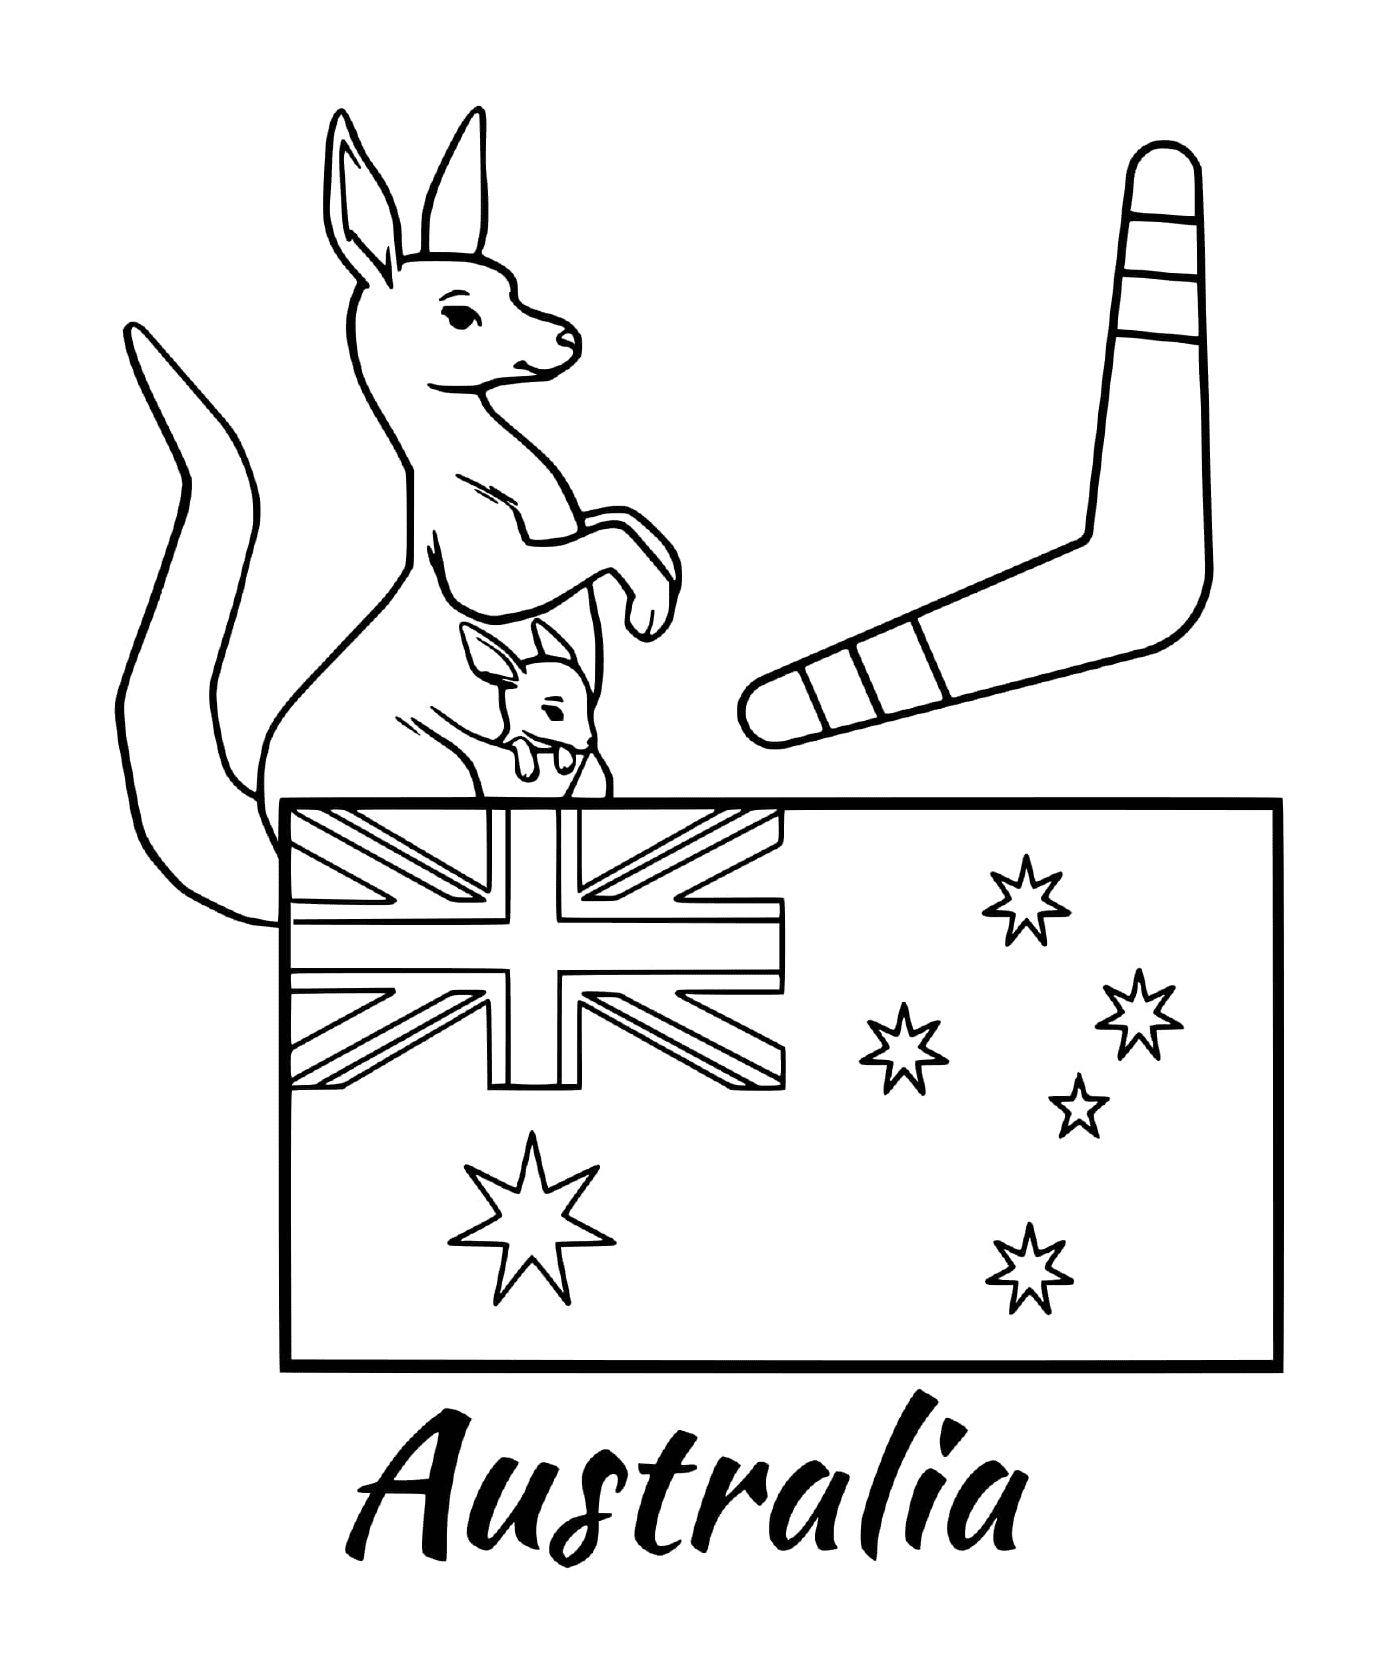  澳大利亚国旗,手持勃勃罗朗 